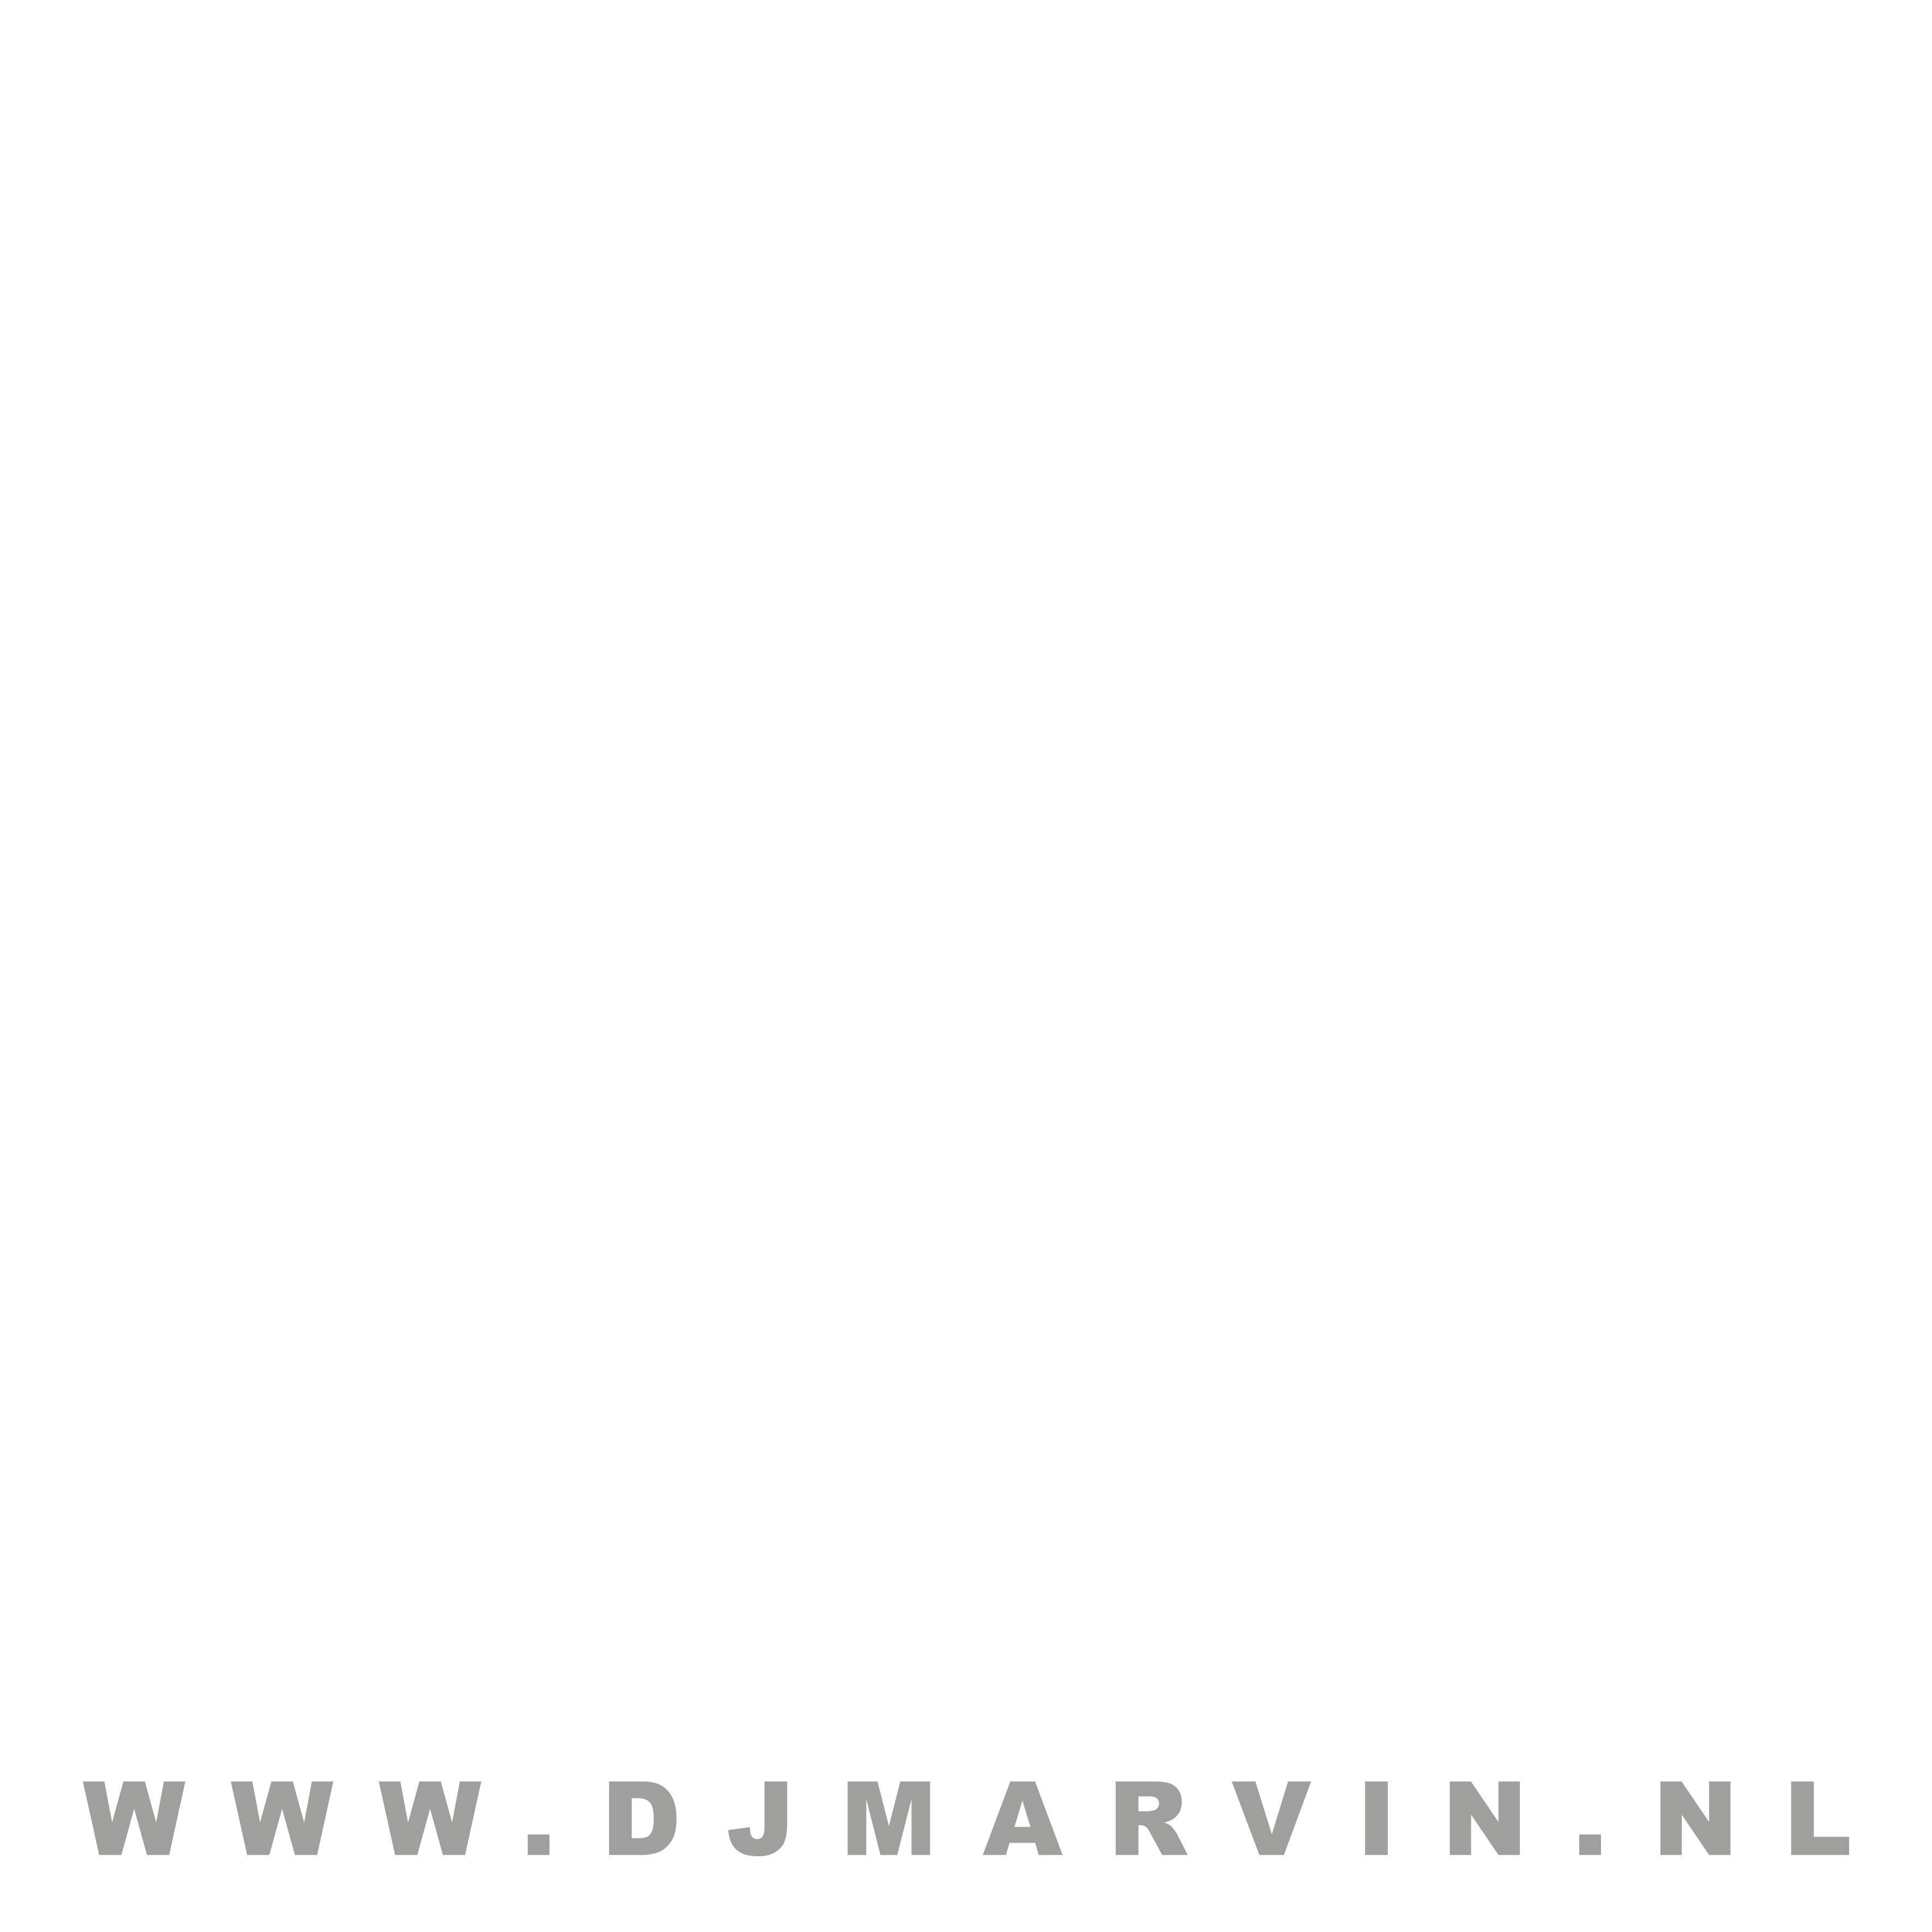 DJ Marvin